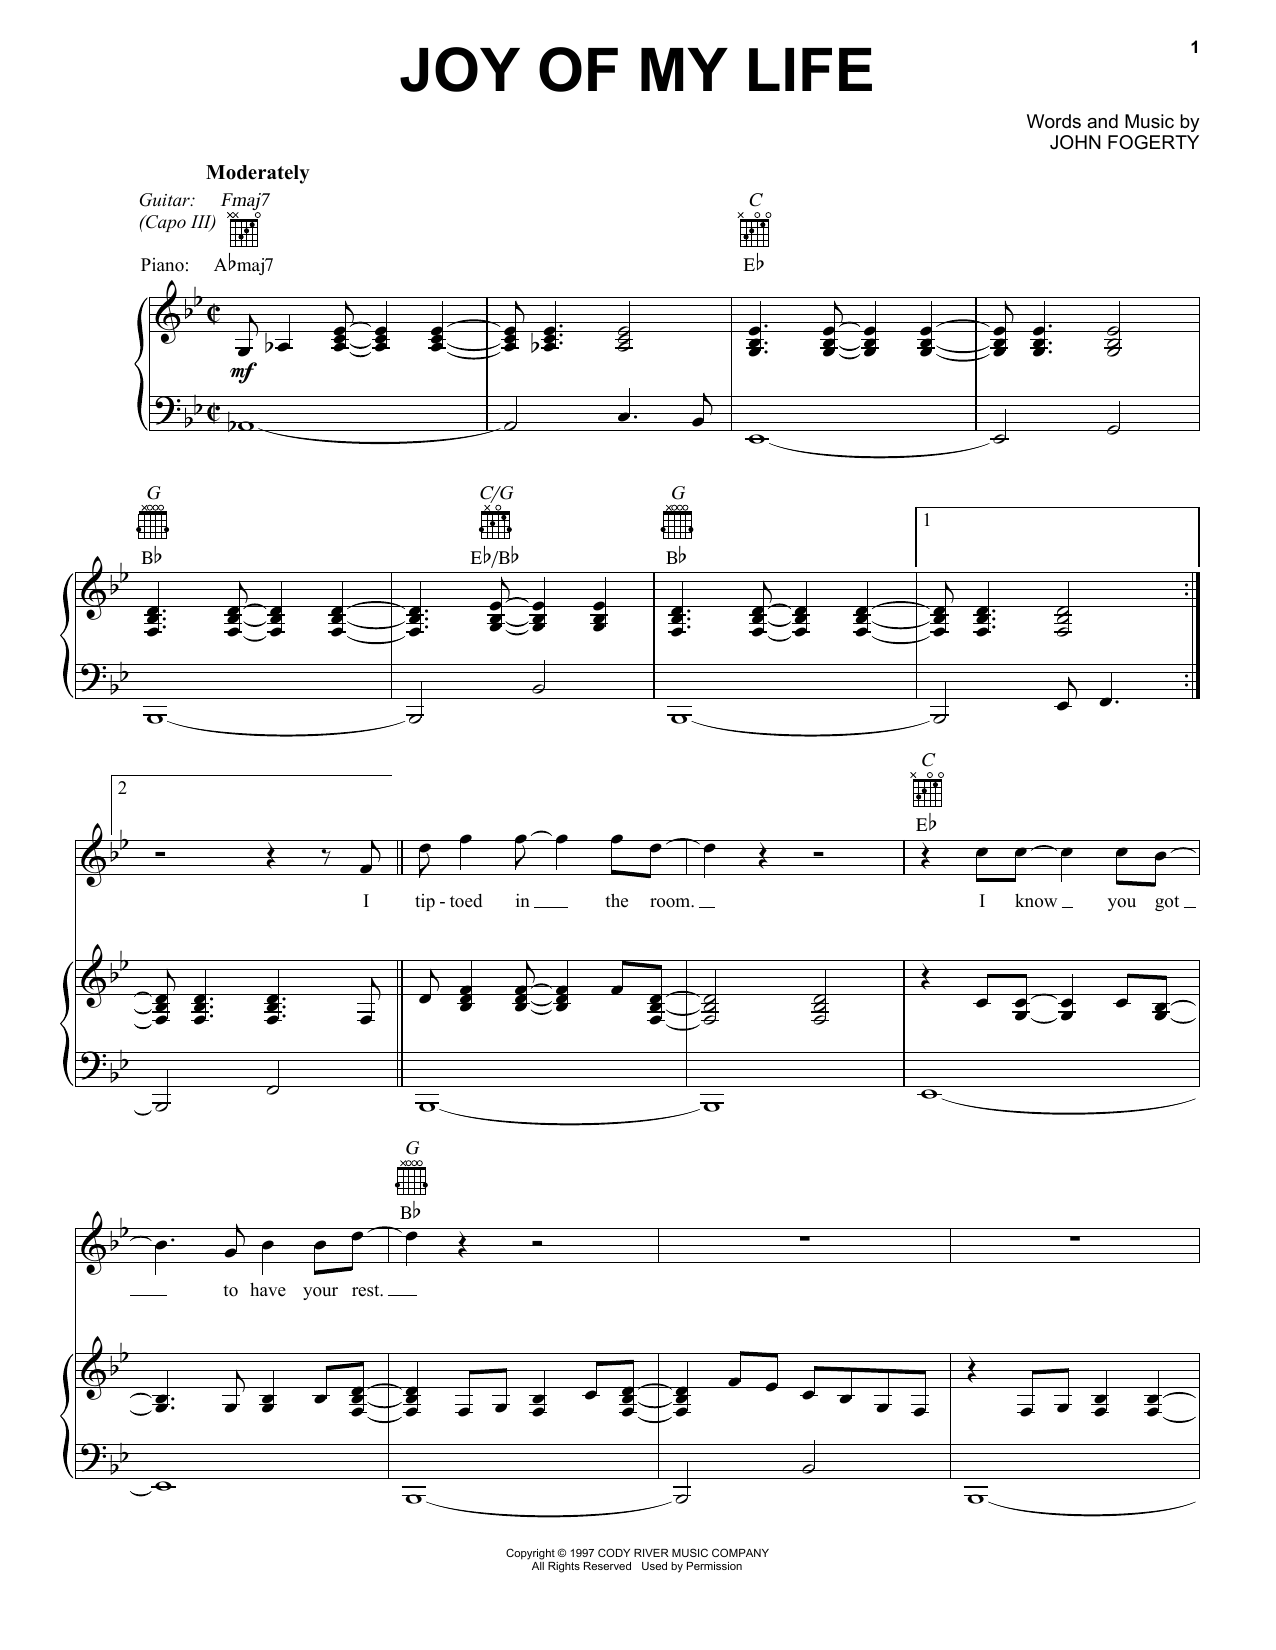 Chris Stapleton "Joy Of My Life" Sheet Music Notes, Chords Download